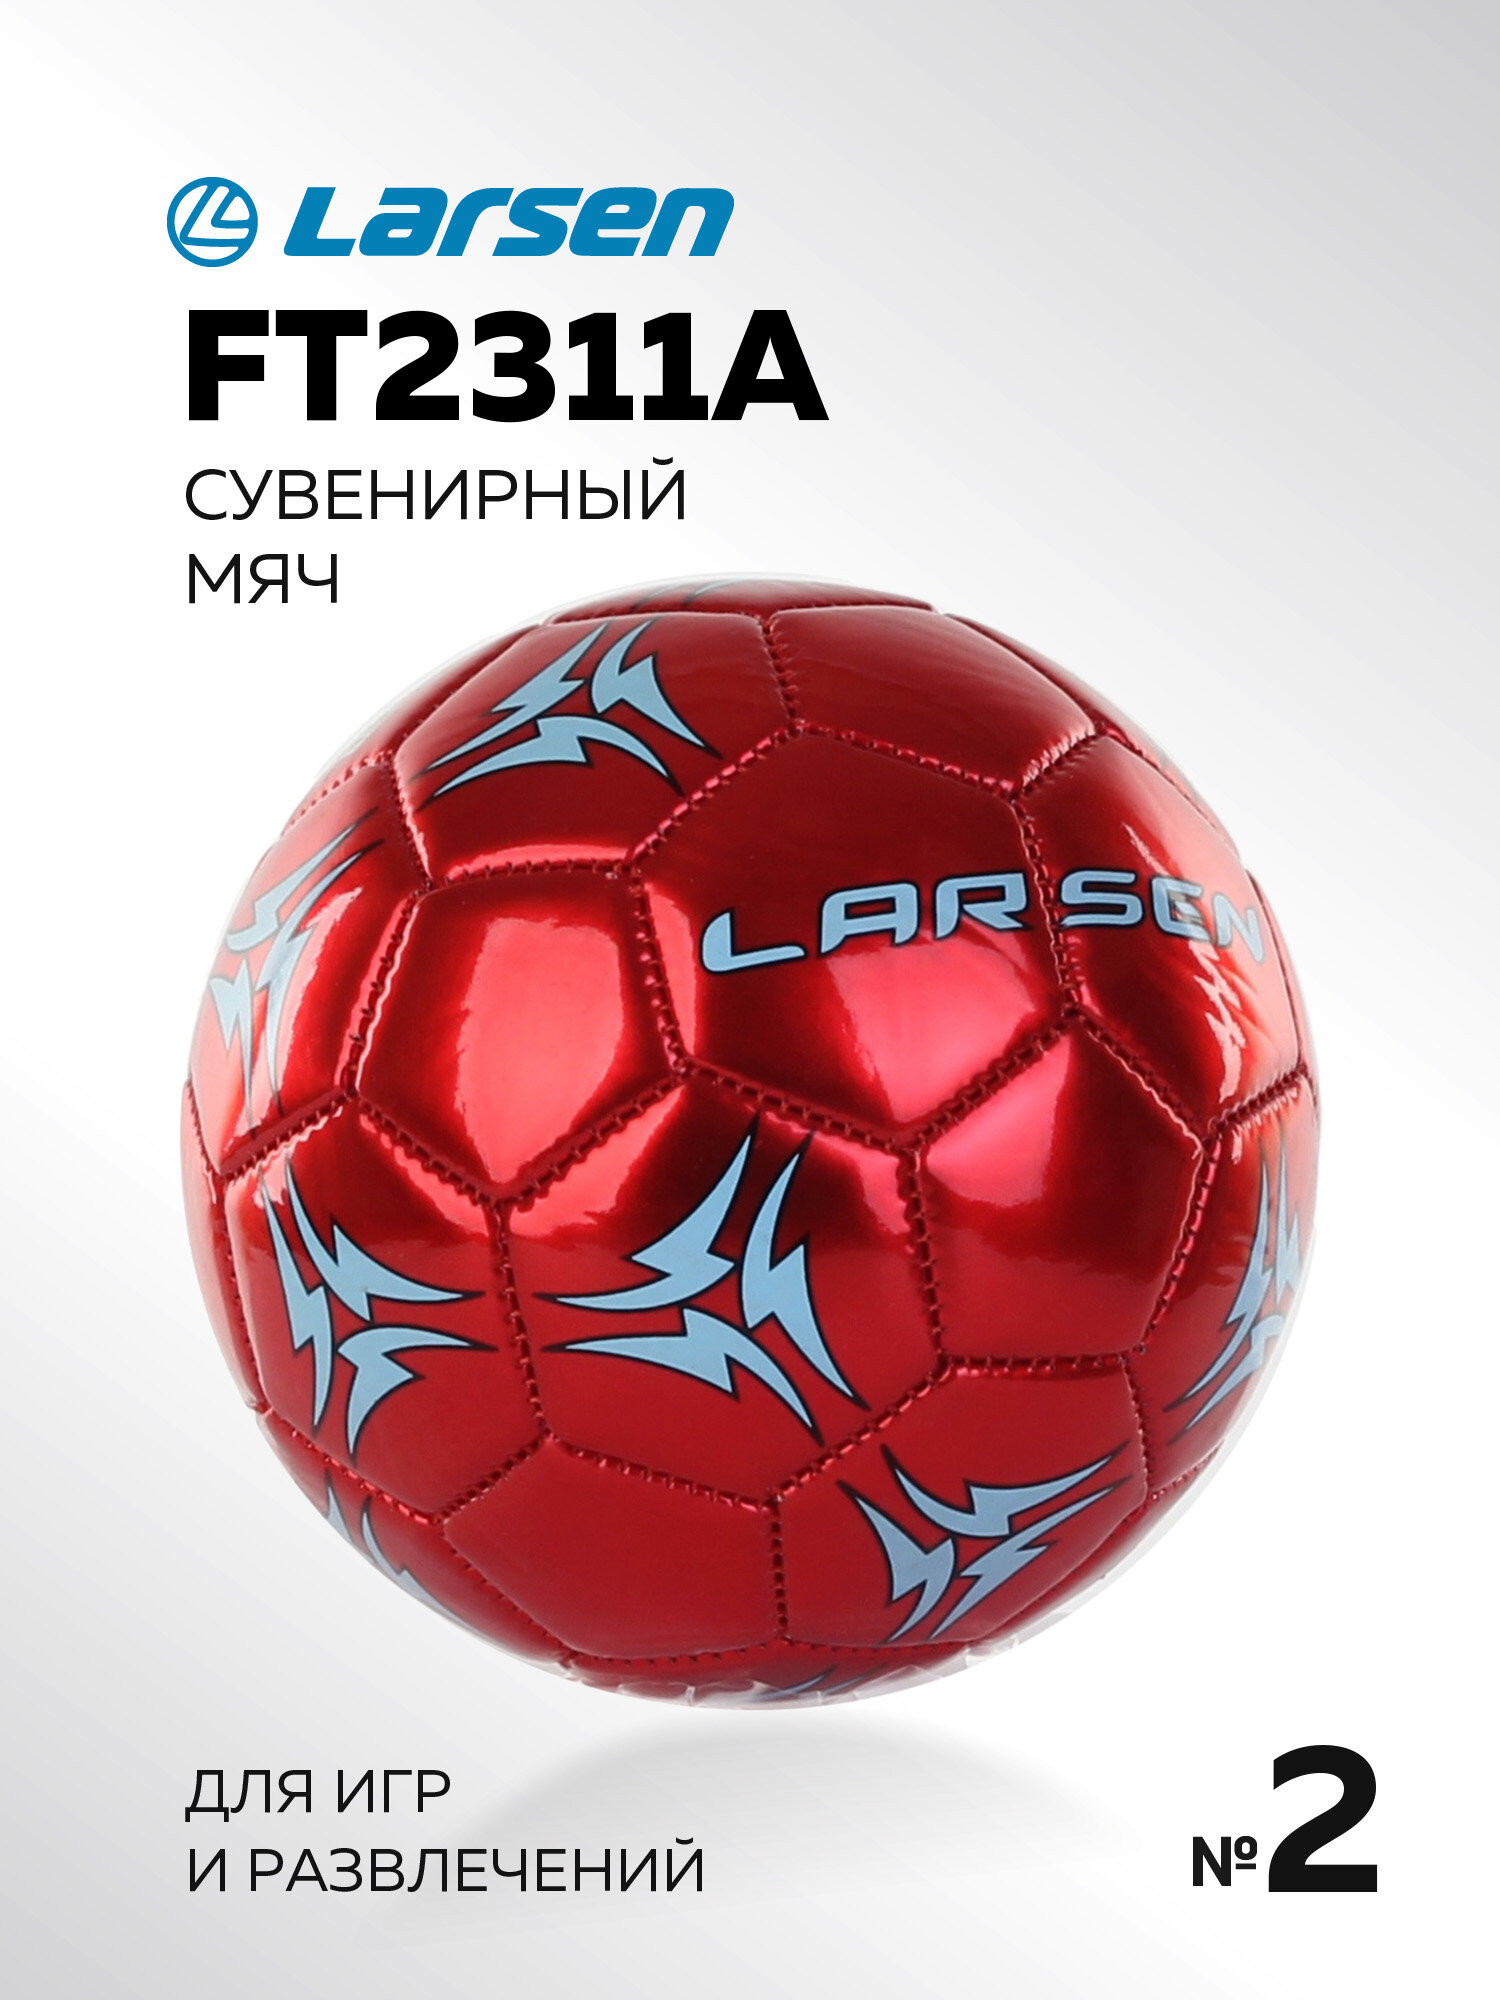 Мяч сувенирный Larsen FT2311A